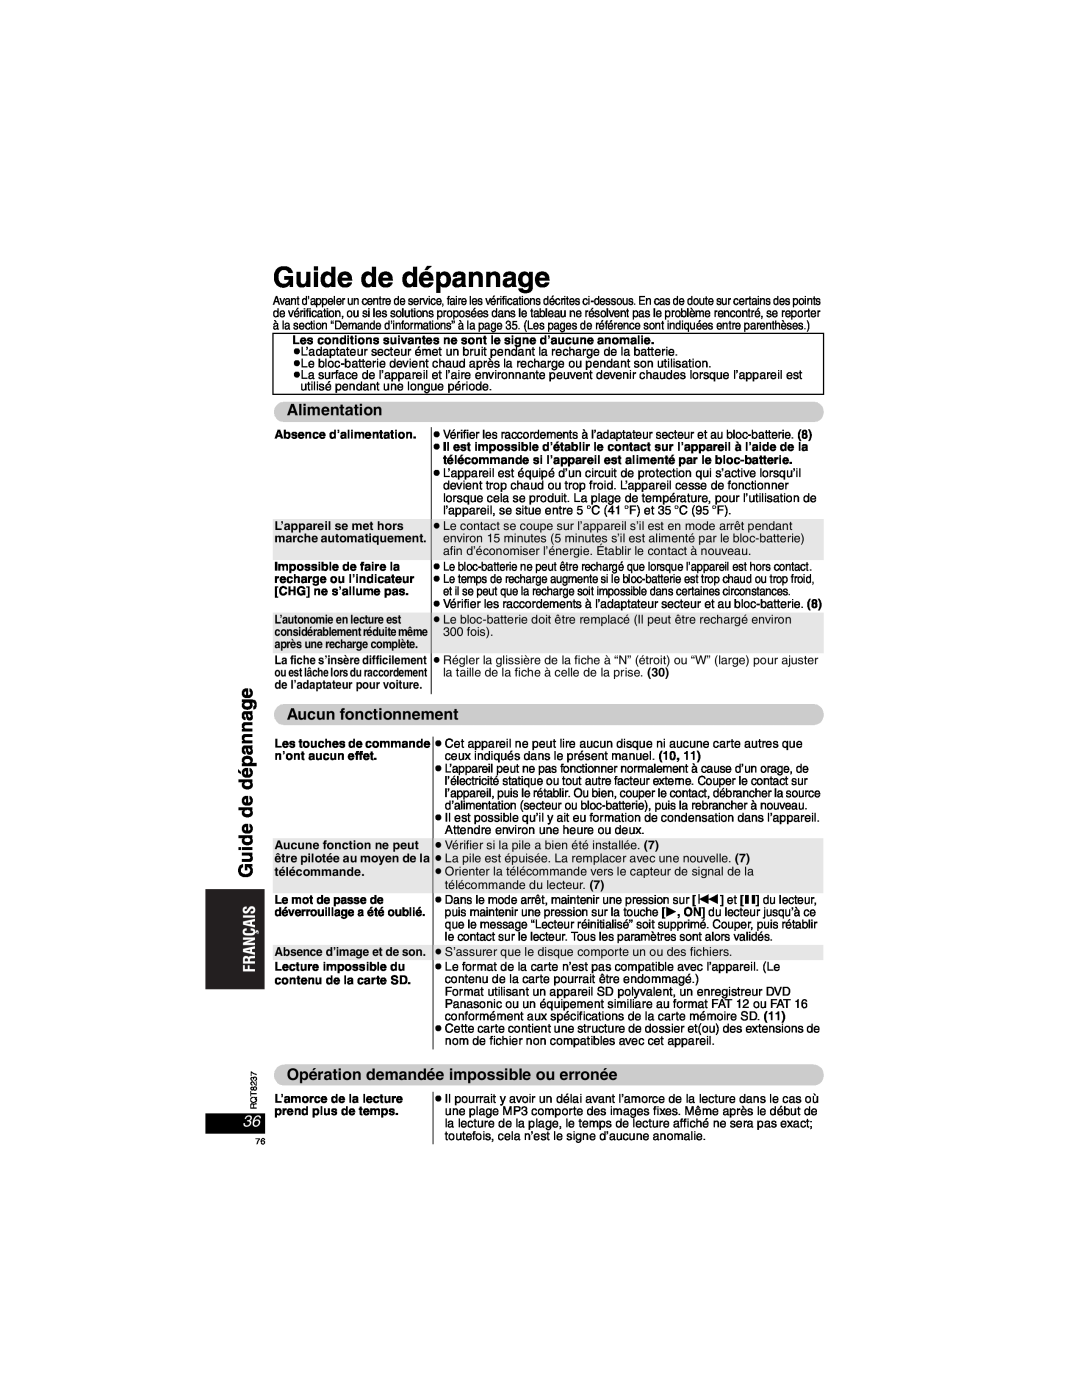 Panasonic DVD-LX97 Guide de dépannage, Alimentation, Aucun fonctionnement, Opération demandée impossible ou erronée 